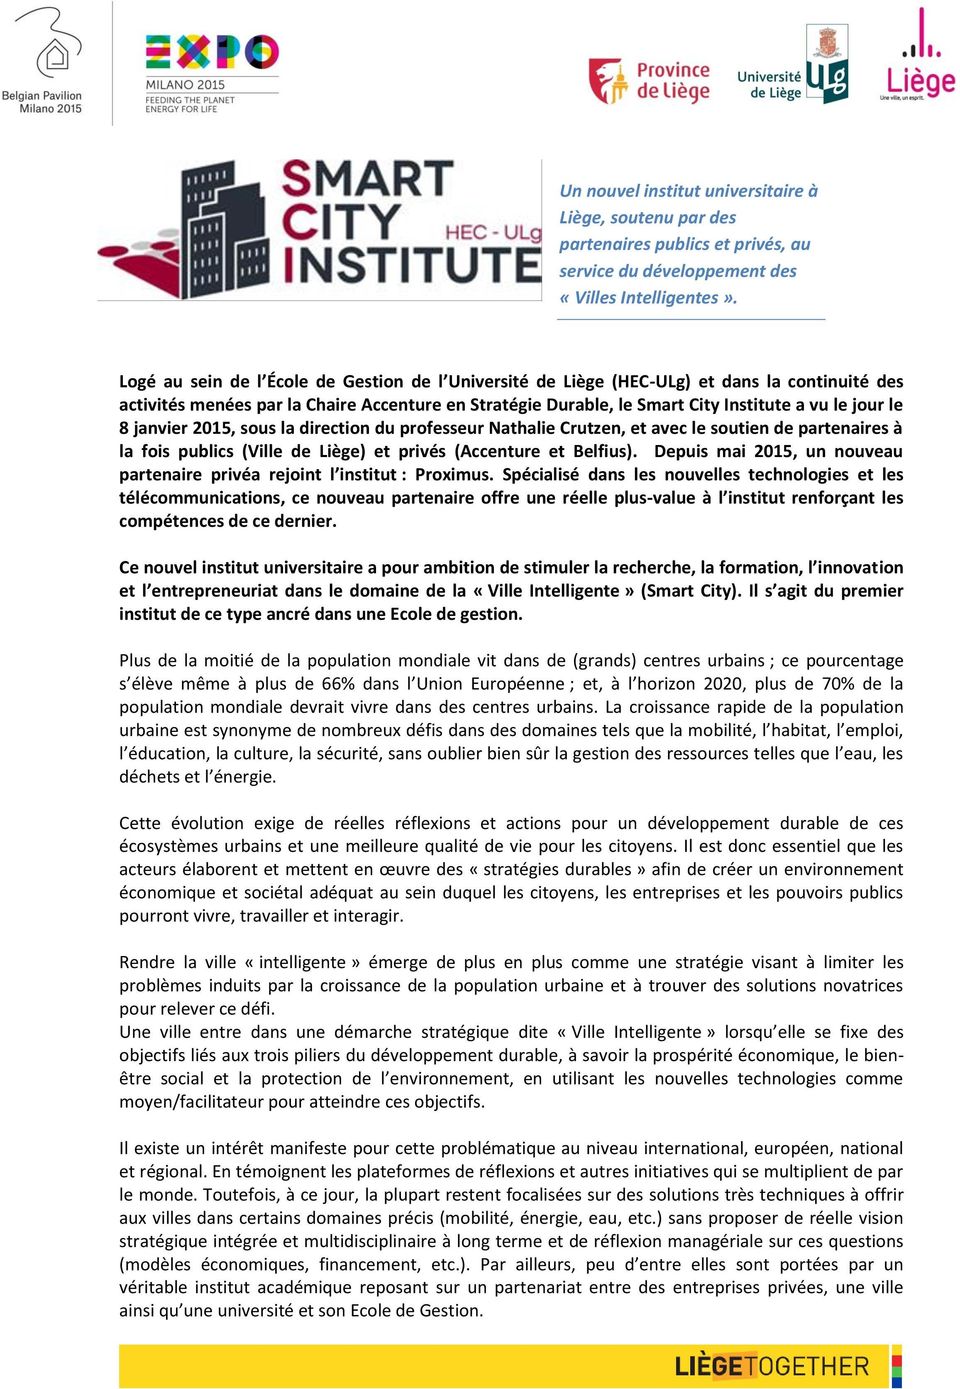 8 janvier 2015, sous la direction du professeur Nathalie Crutzen, et avec le soutien de partenaires à la fois publics (Ville de Liège) et privés (Accenture et Belfius).